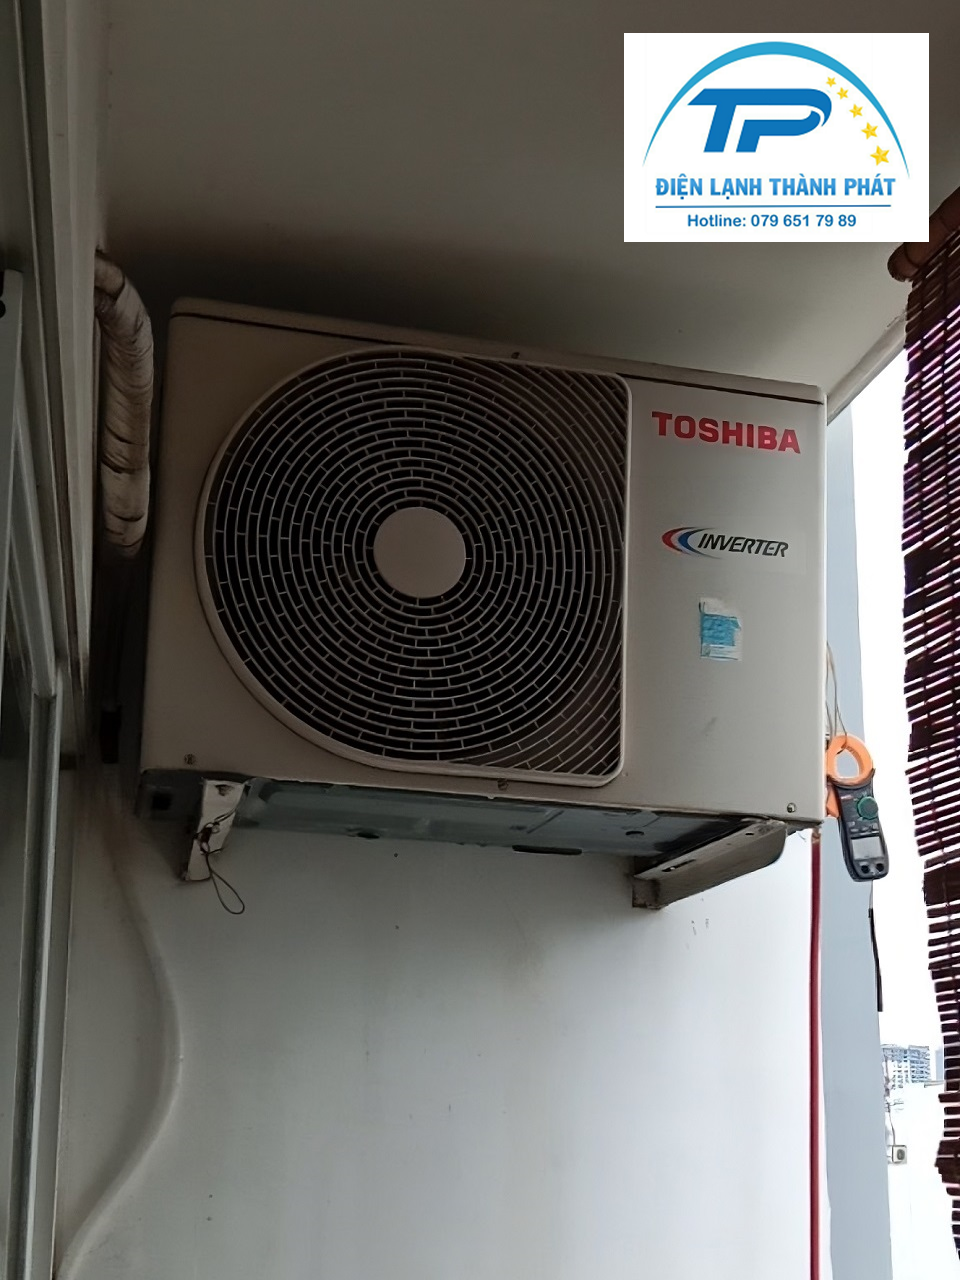 Dịch vụ vệ sinh máy lạnh Reetech Điện lạnh Thành Phát luôn hỗ trợ khách hàng chu đáo.